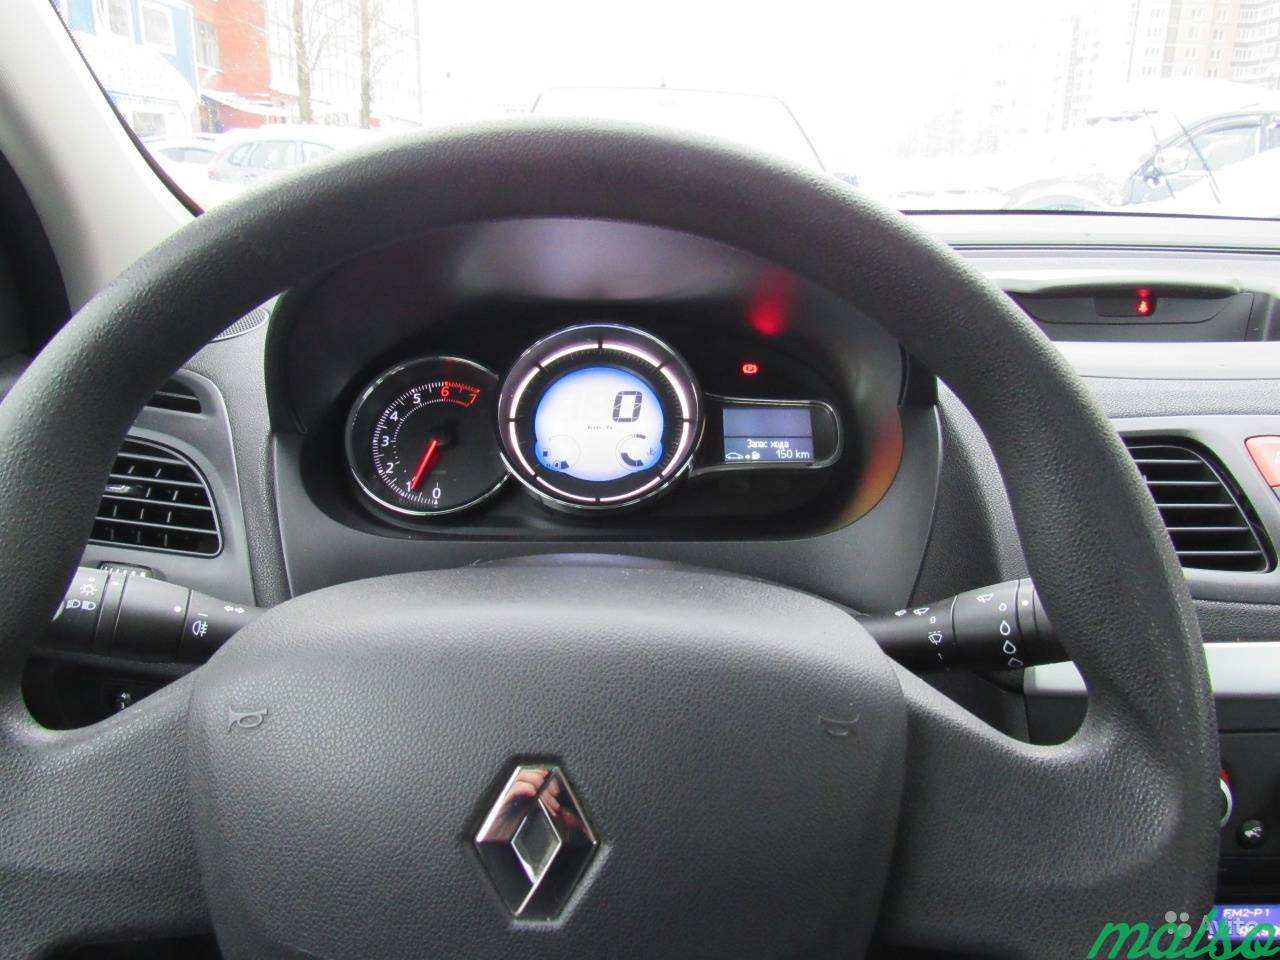 Renault Fluence 1.6 МТ, 2014, седан в Санкт-Петербурге. Фото 10